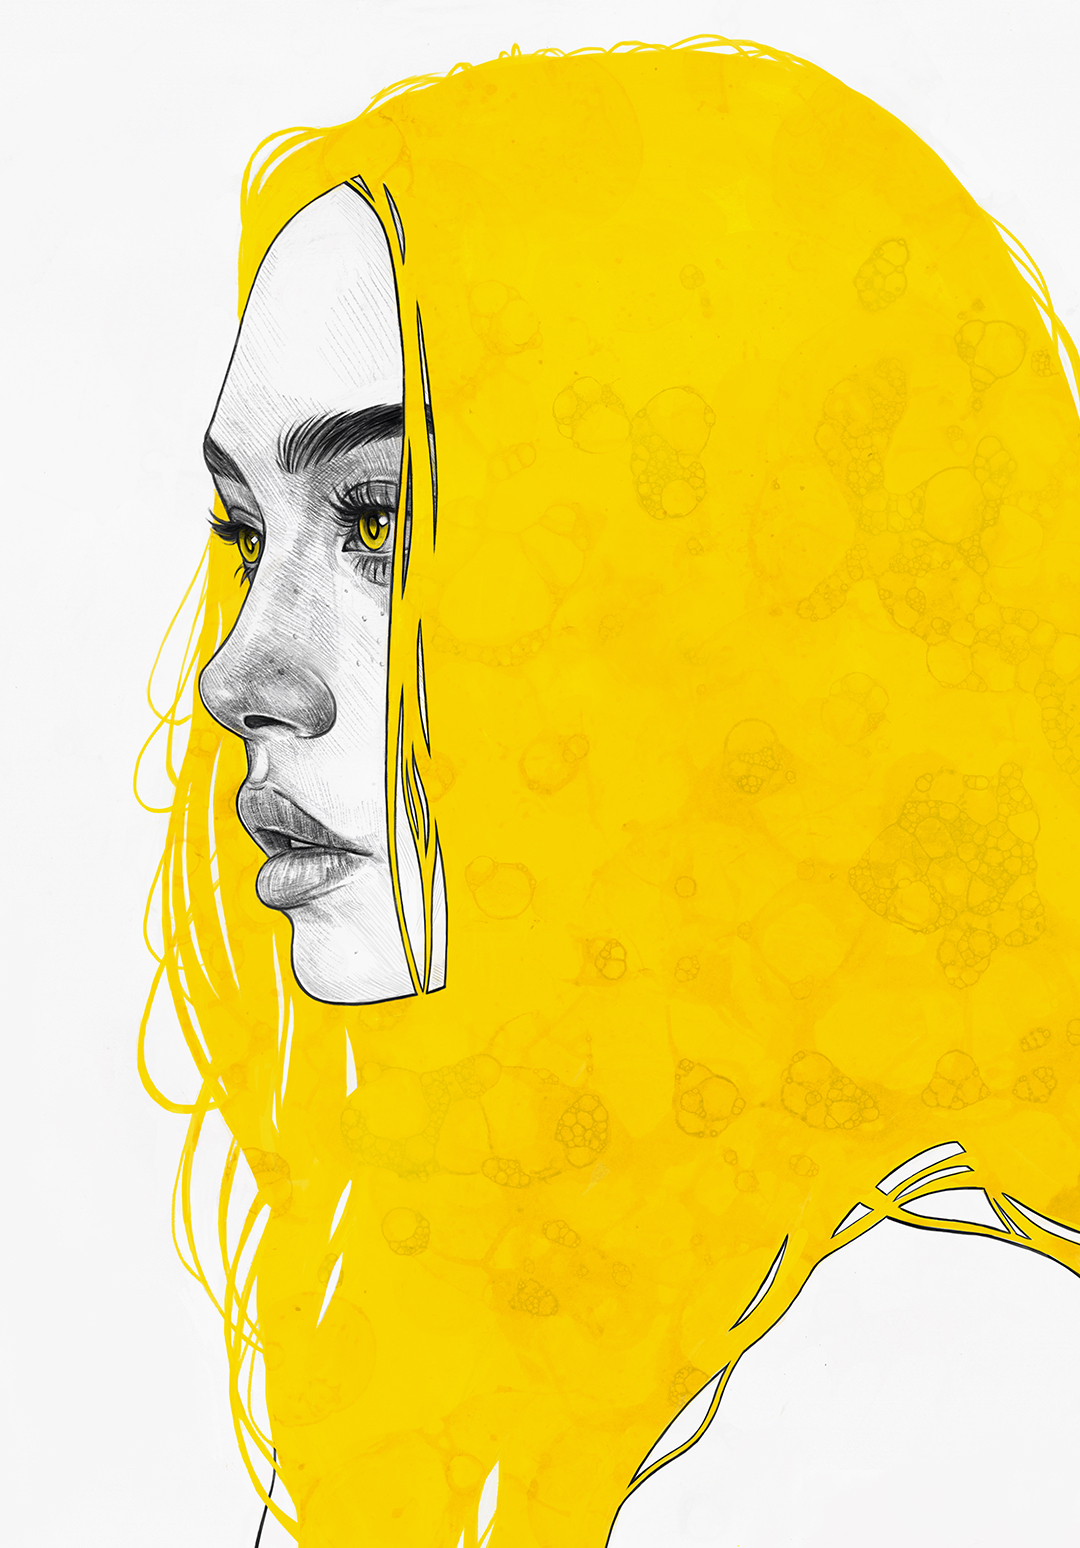 Yellow V by Tomasz-Mro on DeviantArt